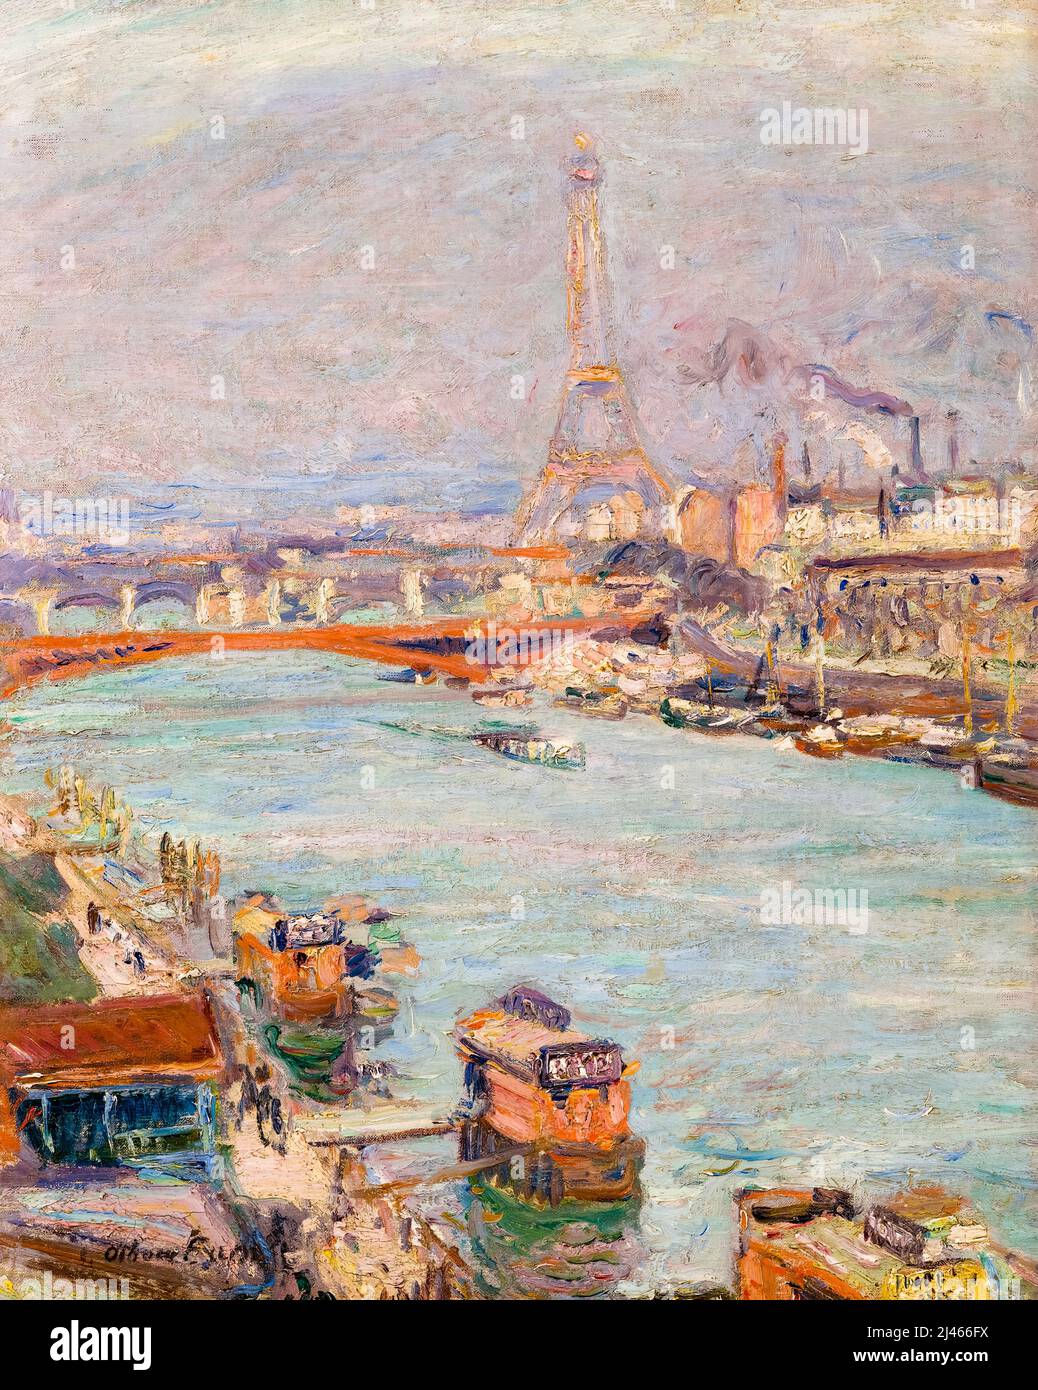 La Seine à Paris, la Tour Eiffel, le jour, paysage peint à l'huile sur toile par Othon Friesz, 1905-1906 Banque D'Images